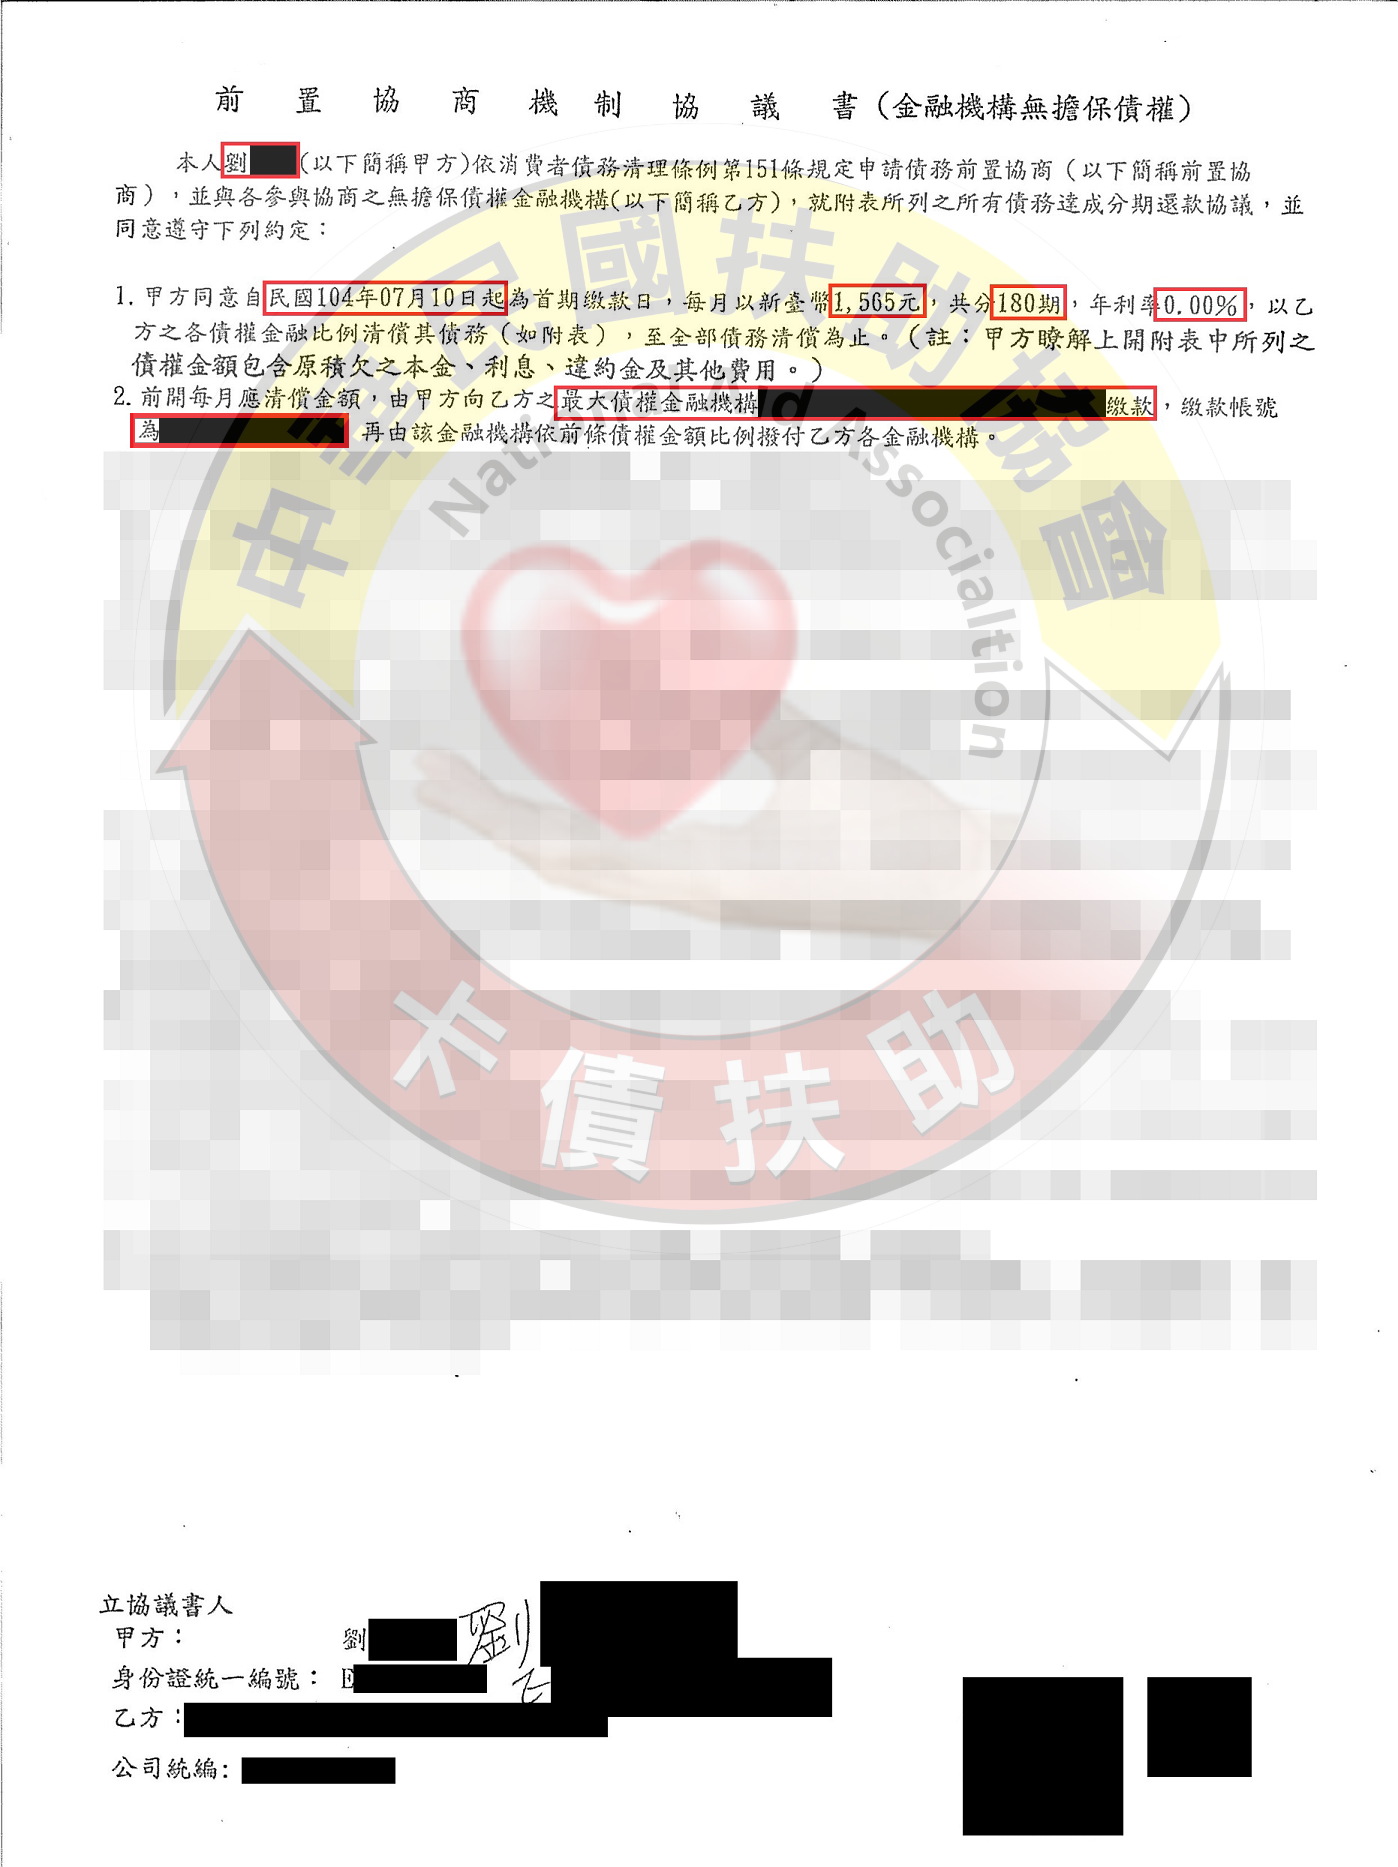 高雄劉小姐-協商成功依180期0%月付1,565元